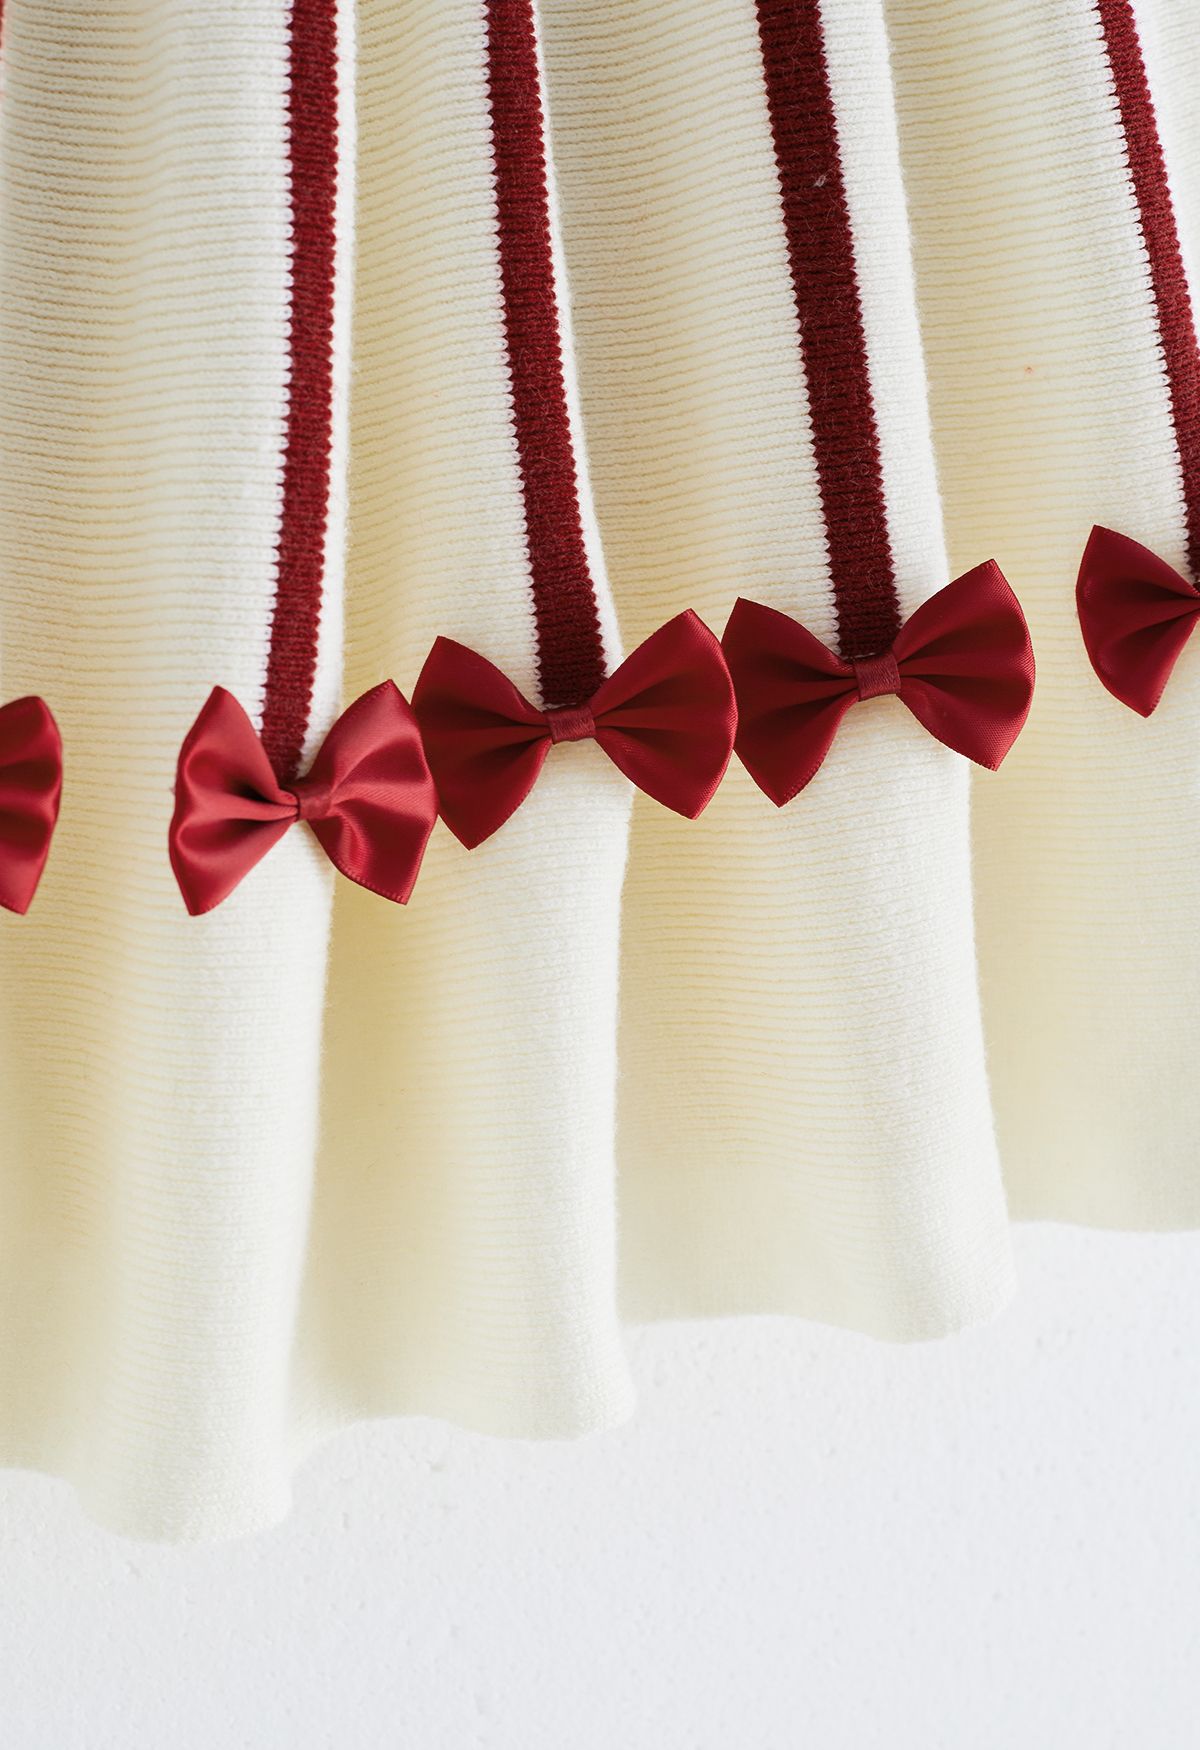 Sweet Red Bowknot Knit Dress pour les enfants